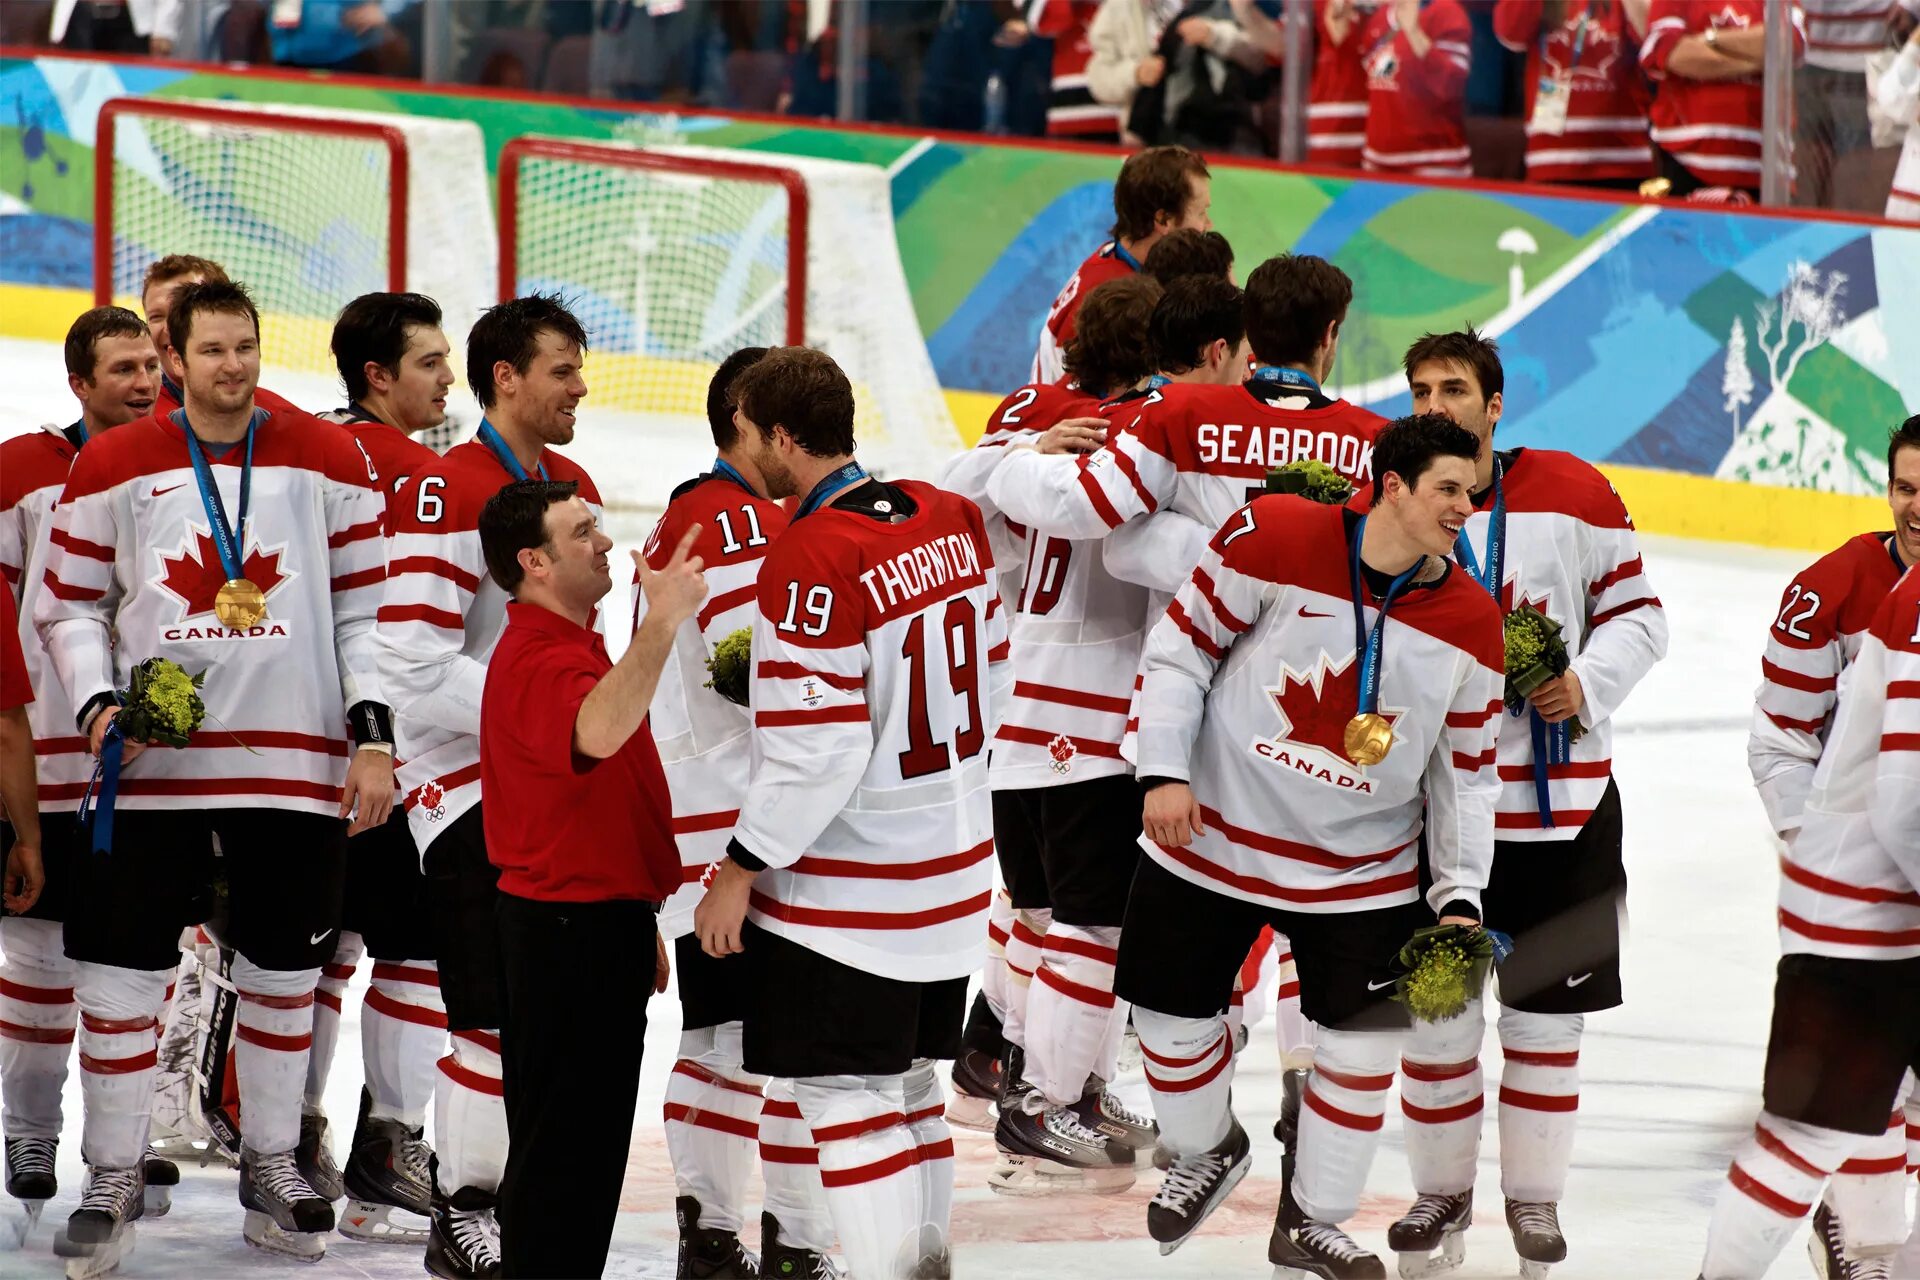 Сборная Канады по хоккею на Олимпиаде 2010. Сборная Канады по хоккею с шайбой 2014. Канадская сборная по хоккею 2014 Олимпийский чемпион. Кросби хоккеист Канада. Хоккей с шайбой 2014